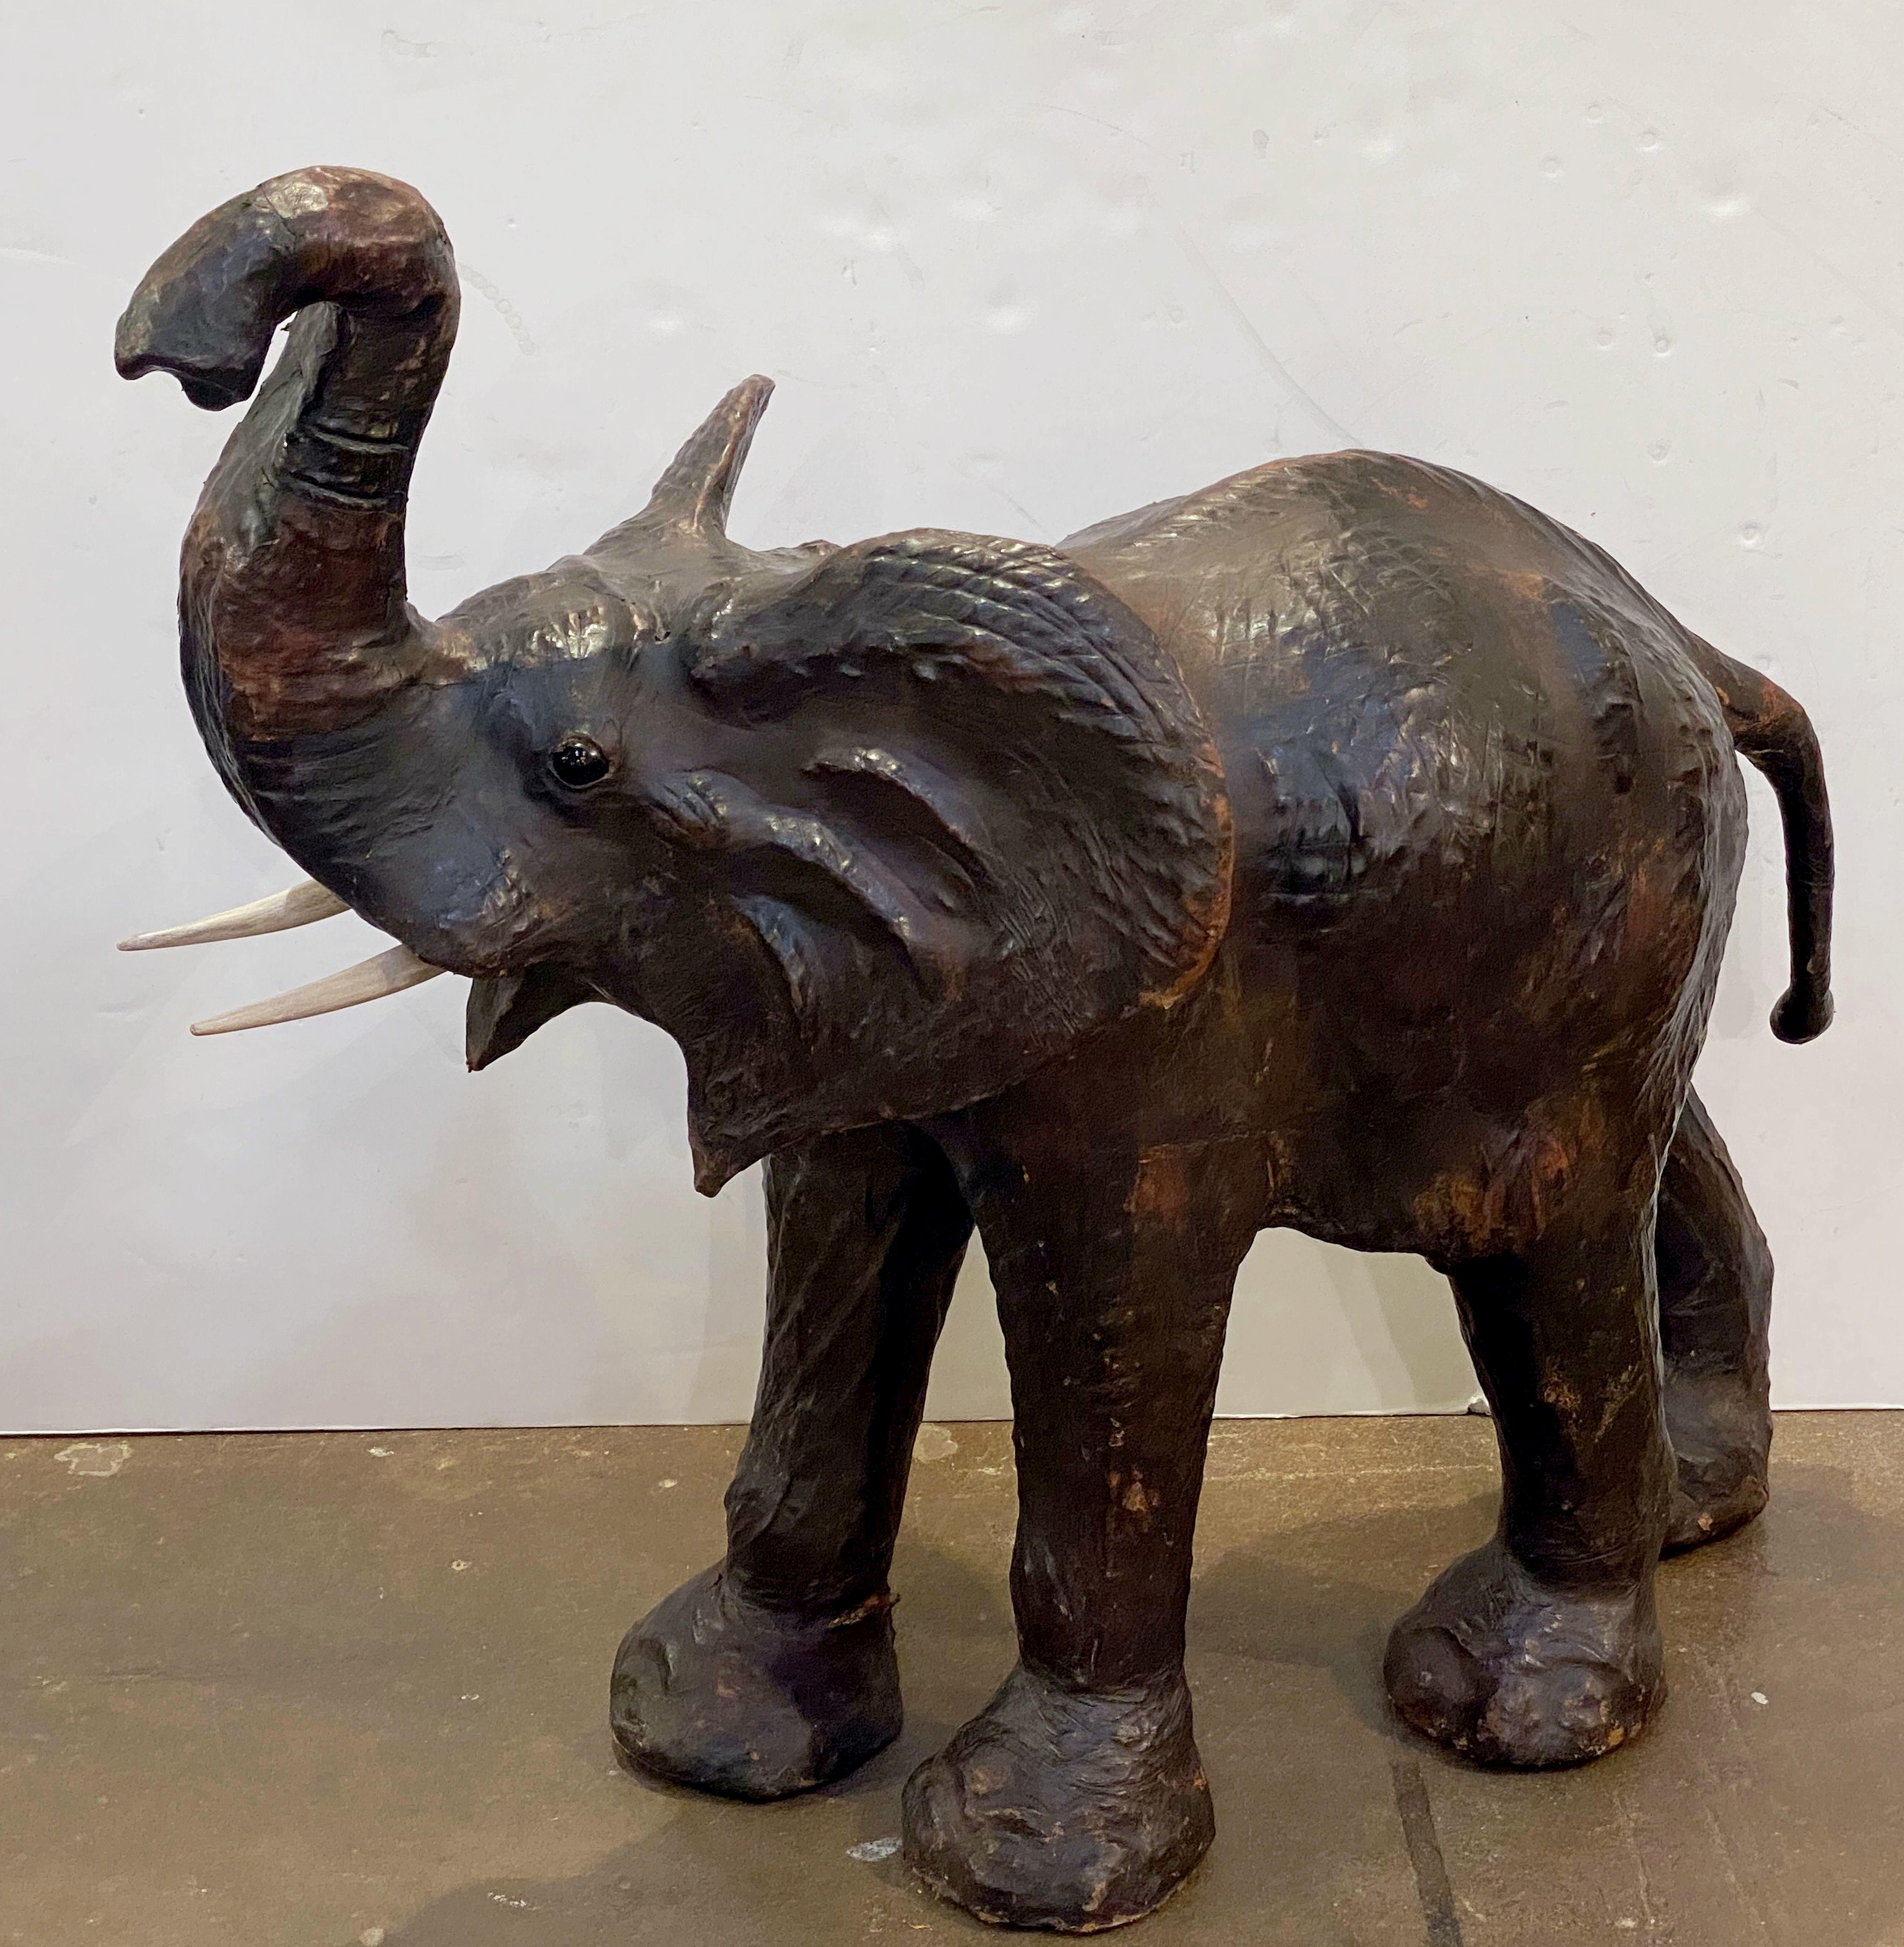 Ein schönes großes englisches Modell eines stehenden Elefanten aus dem frühen bis mittleren 20. Jahrhundert, aus Rindsleder mit hölzernen Stoßzähnen.

Die Abmessungen sind ungefähr: H 41 Zoll x B 47 Zoll x T 28 Zoll.